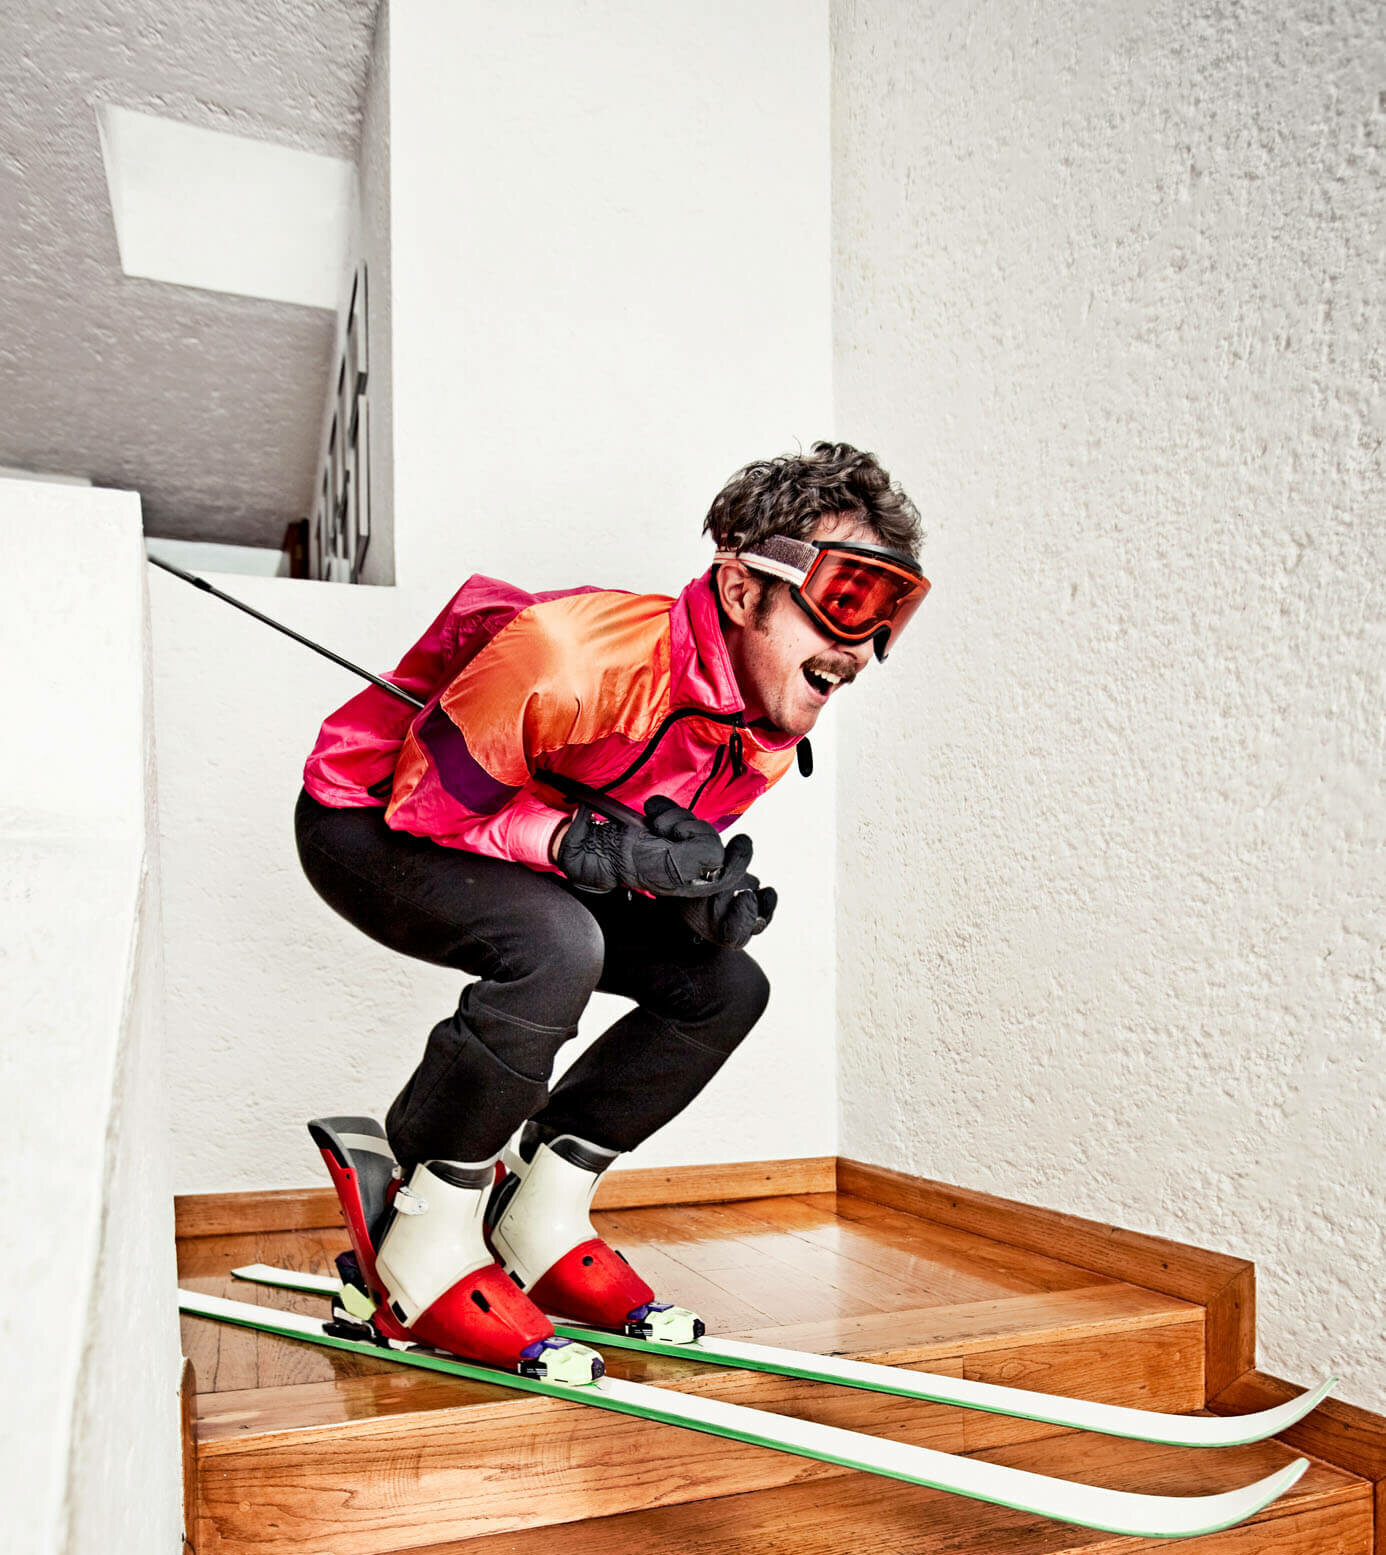 Man Skiing at Home